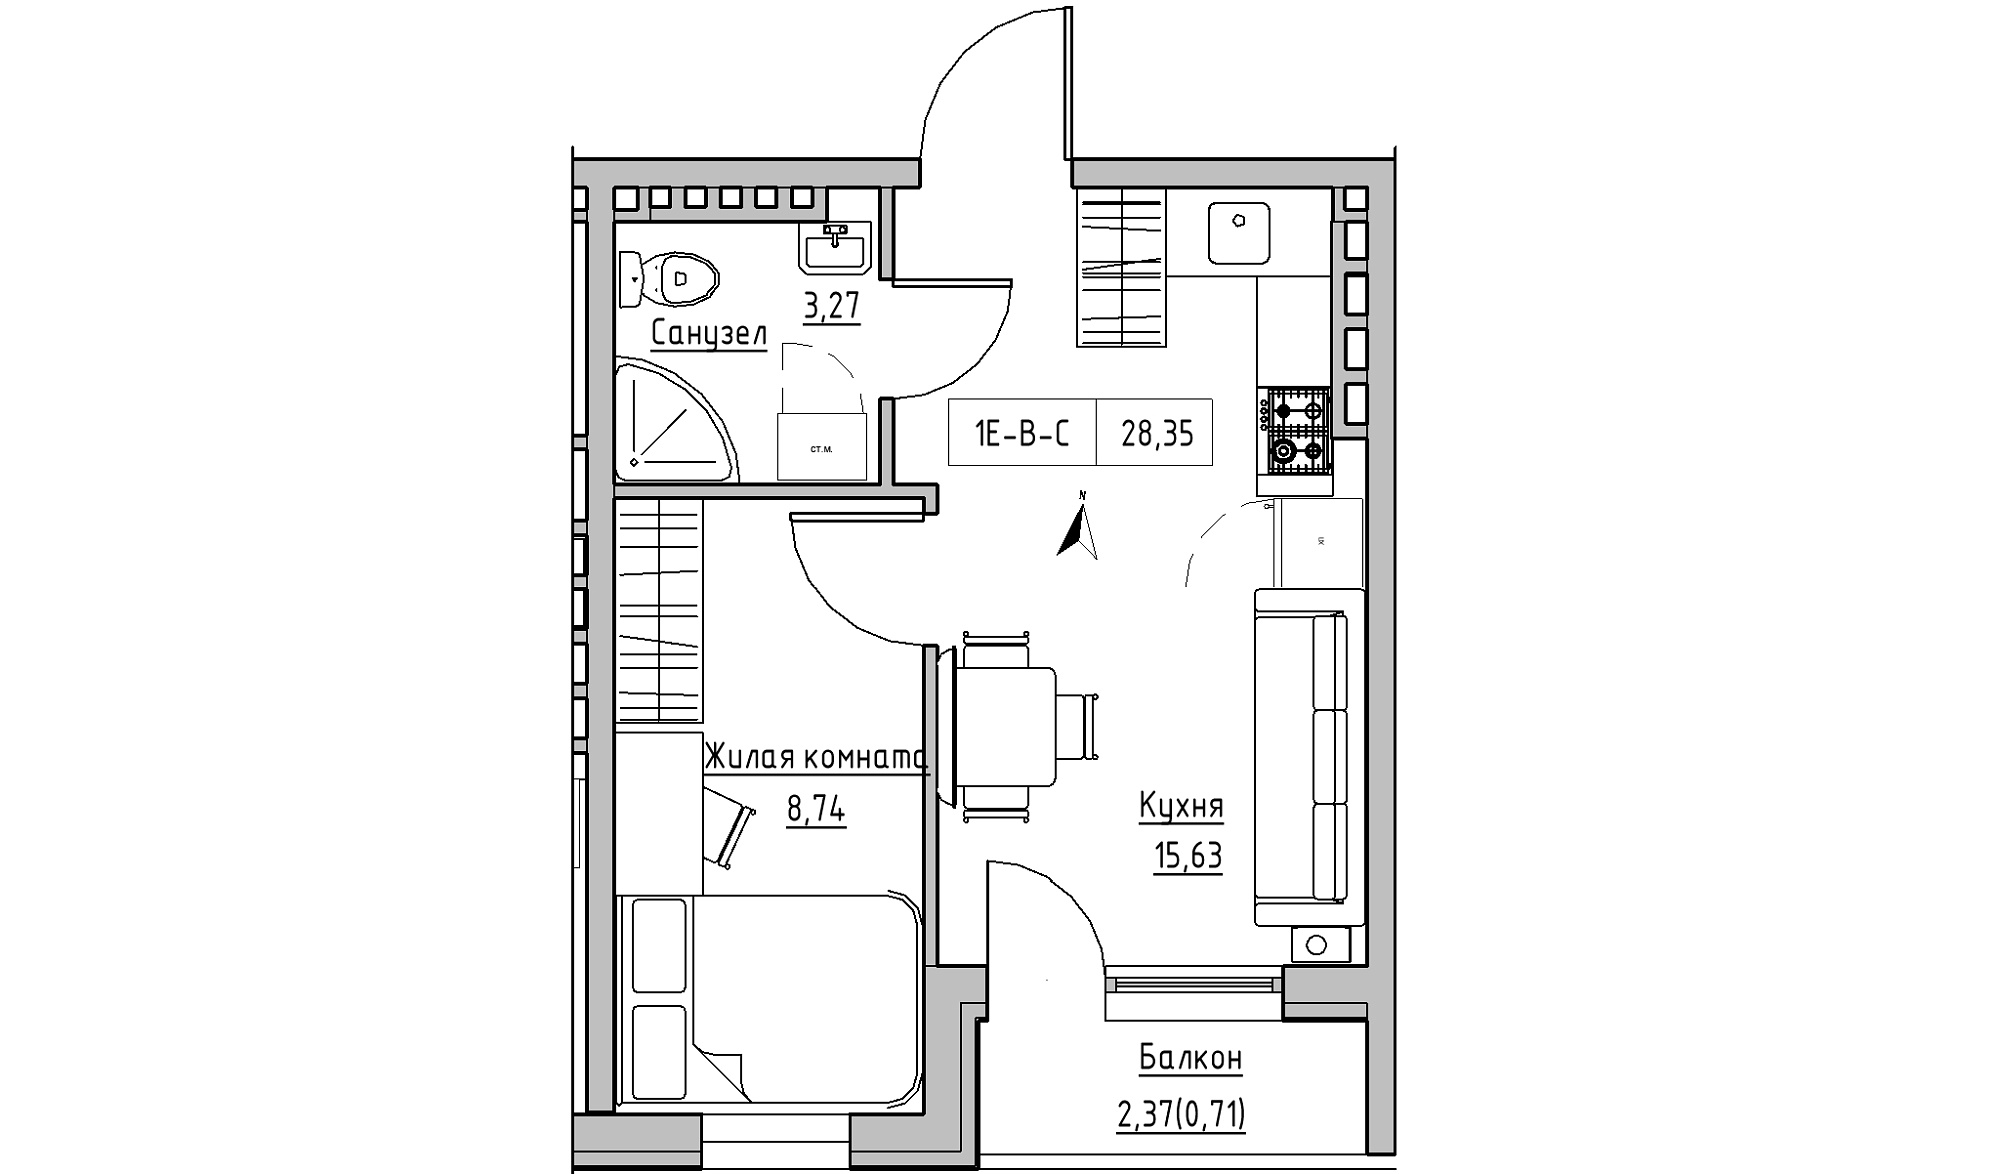 Планировка 1-к квартира площей 28.35м2, KS-024-05/0008.